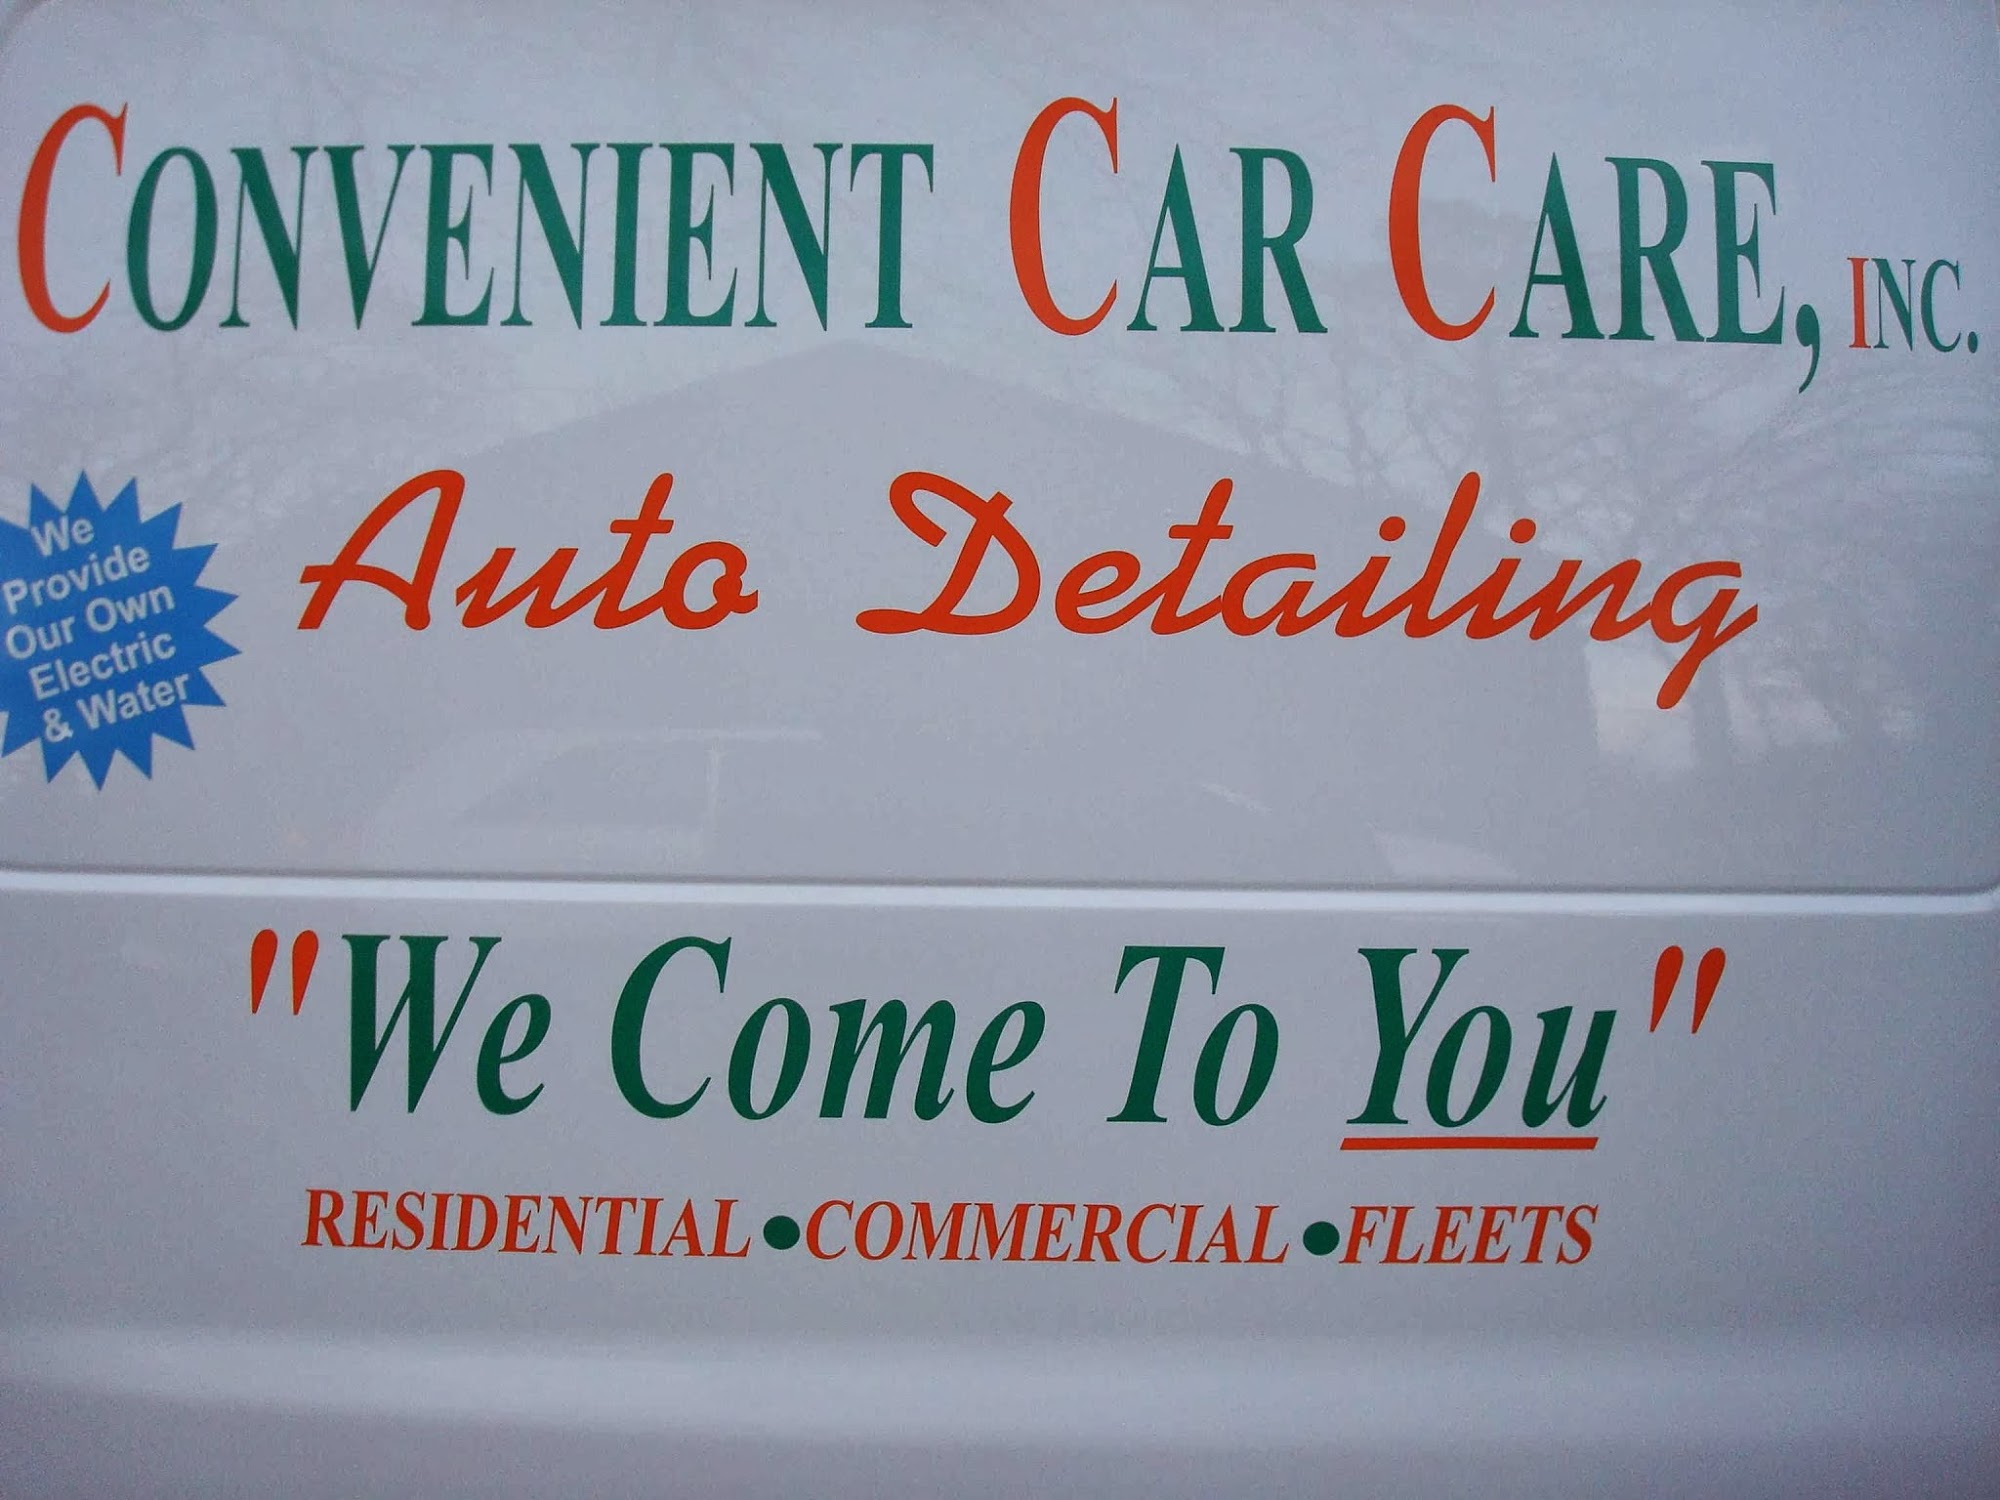 Convenient Car Care Corporation